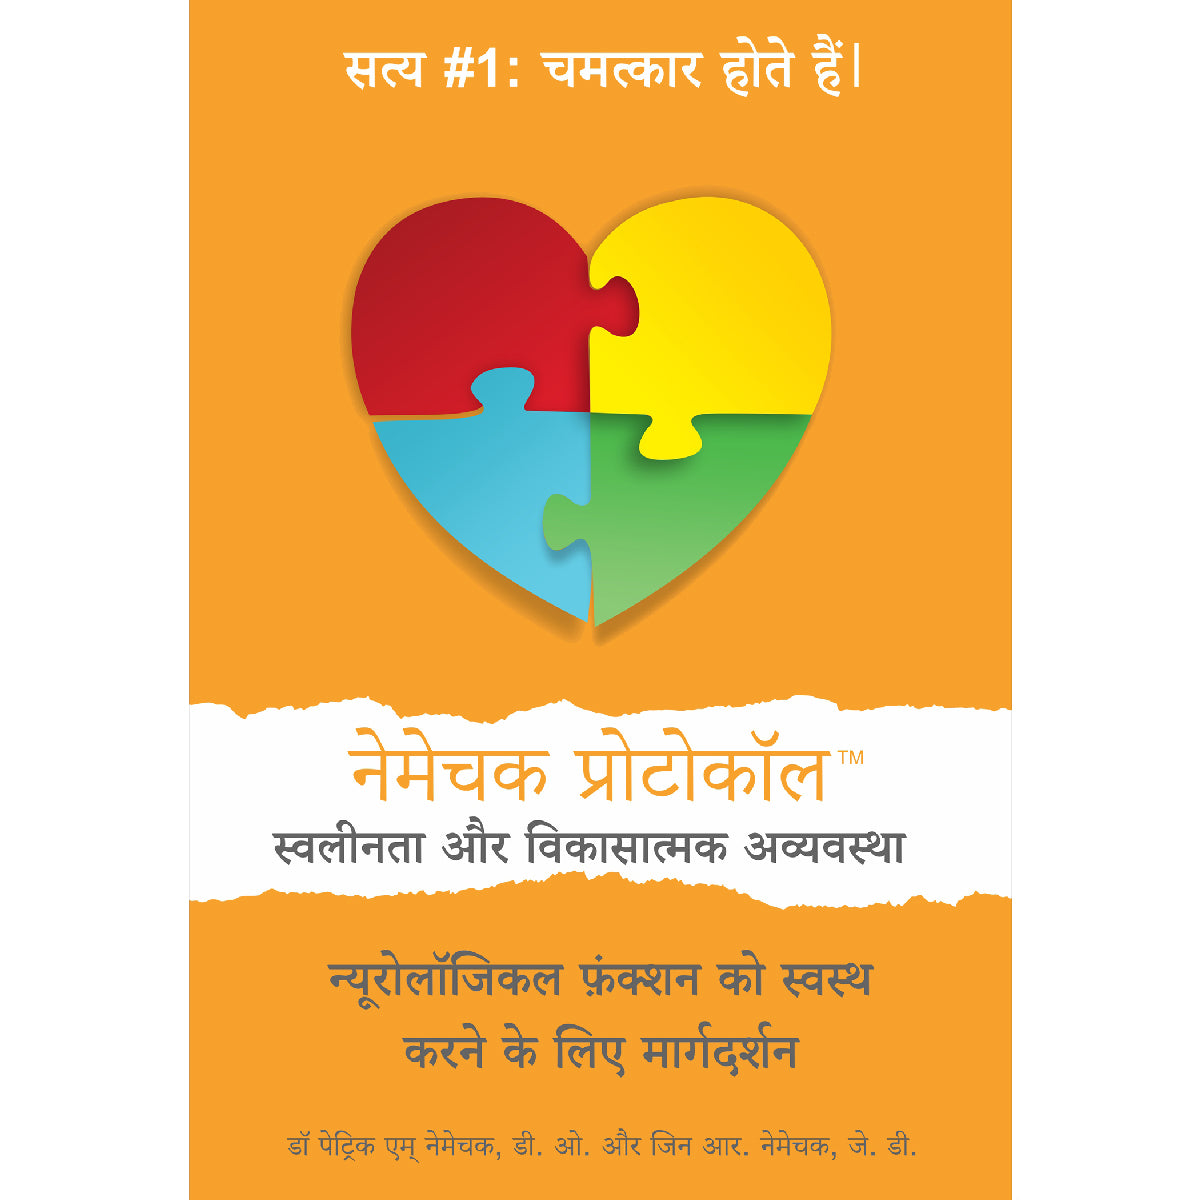 पहला संस्करण (Hindi, iPhone/iPad/EPUB Reader) नीकेस्क प्रोटोकॉल ™ फ़ॉर ऑटि शम और विकास संबंधी विकार